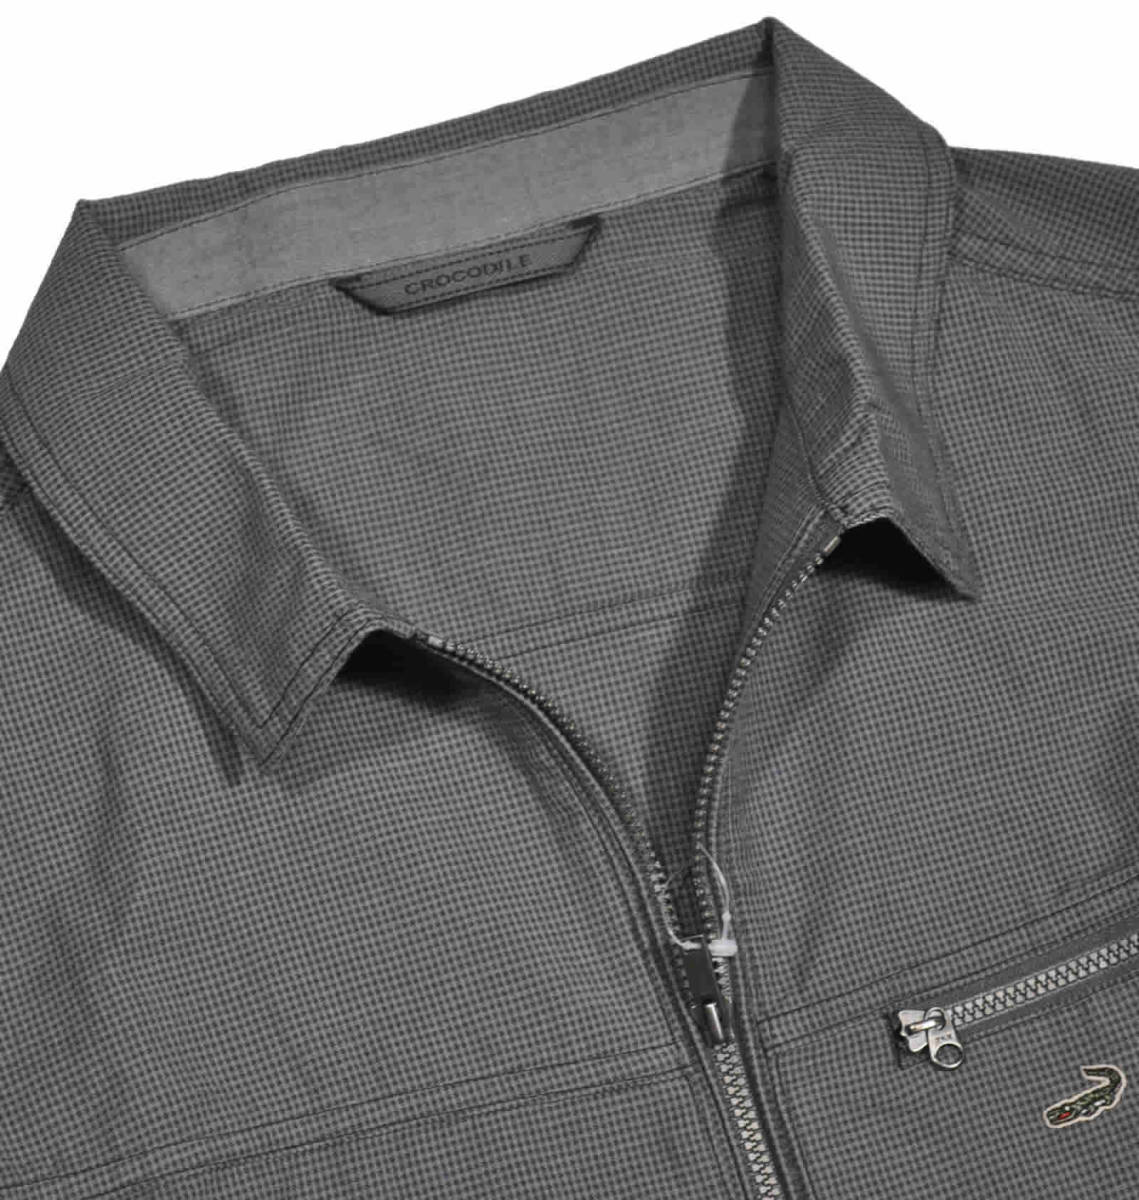 [クロコダイル] カバーオール ジャケットジャンパー 綿混 春夏 Lサイズ 2チャコール 1604-03401の画像2